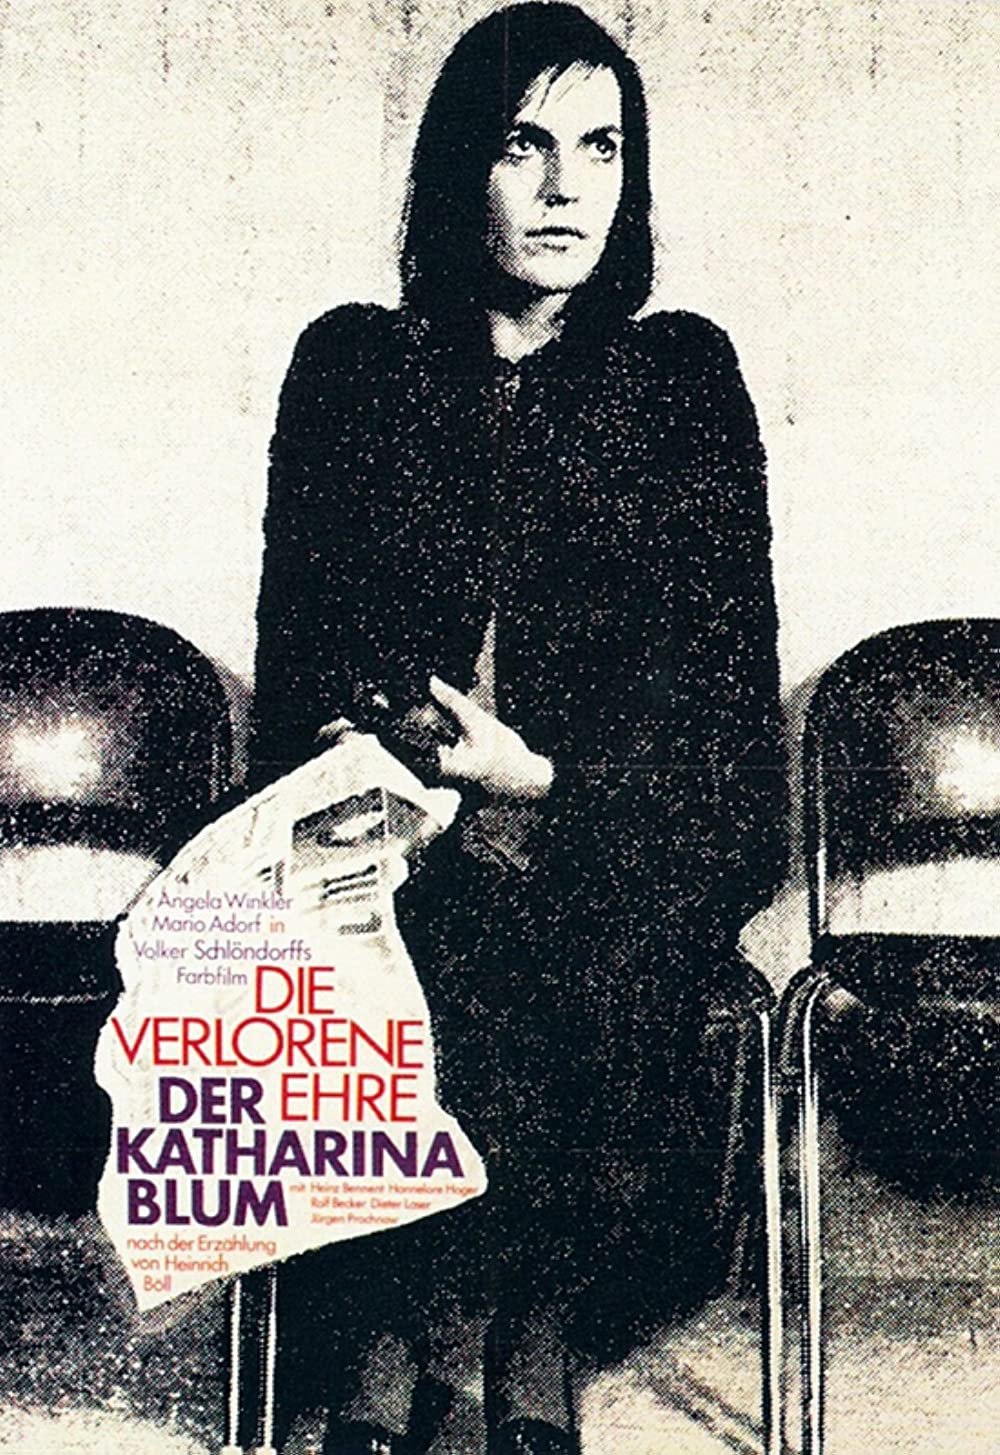 Filmbeschreibung zu Die verlorene Ehre der Katharina Blum